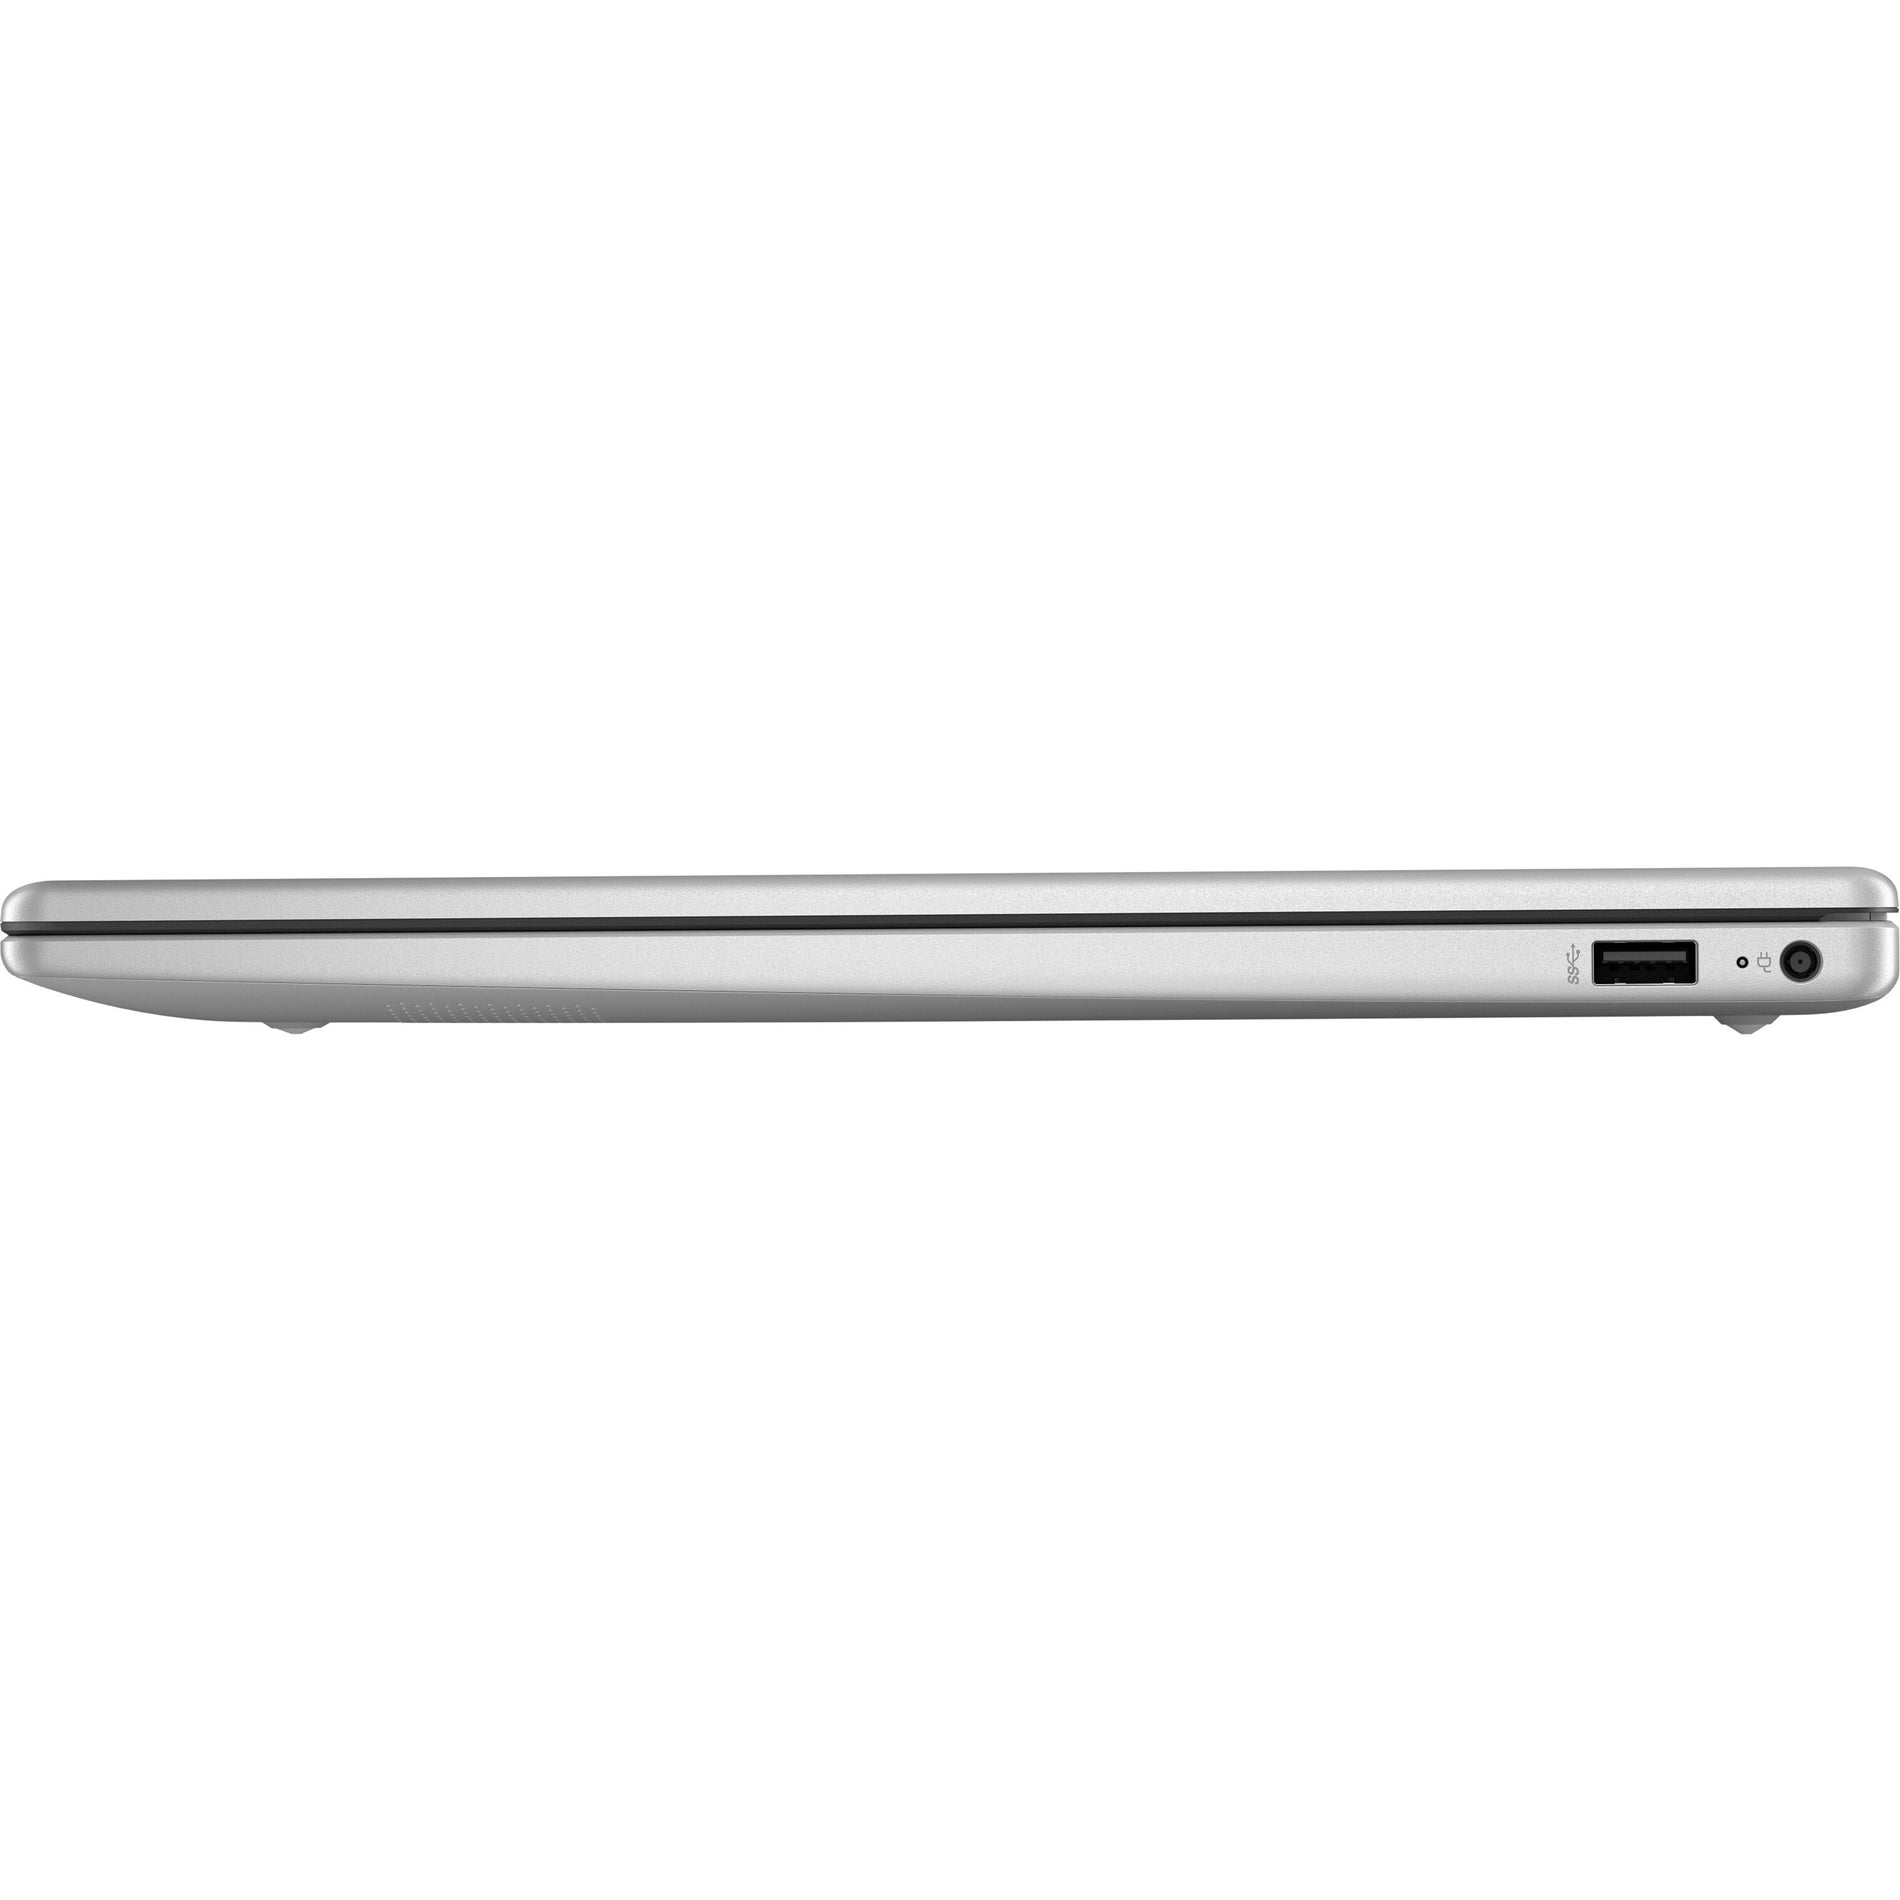 HP Laptop 15-fc0045nr, Full HD 15.6" Notebook, AMD Ryzen 7, 8GB RAM, 256GB SSD